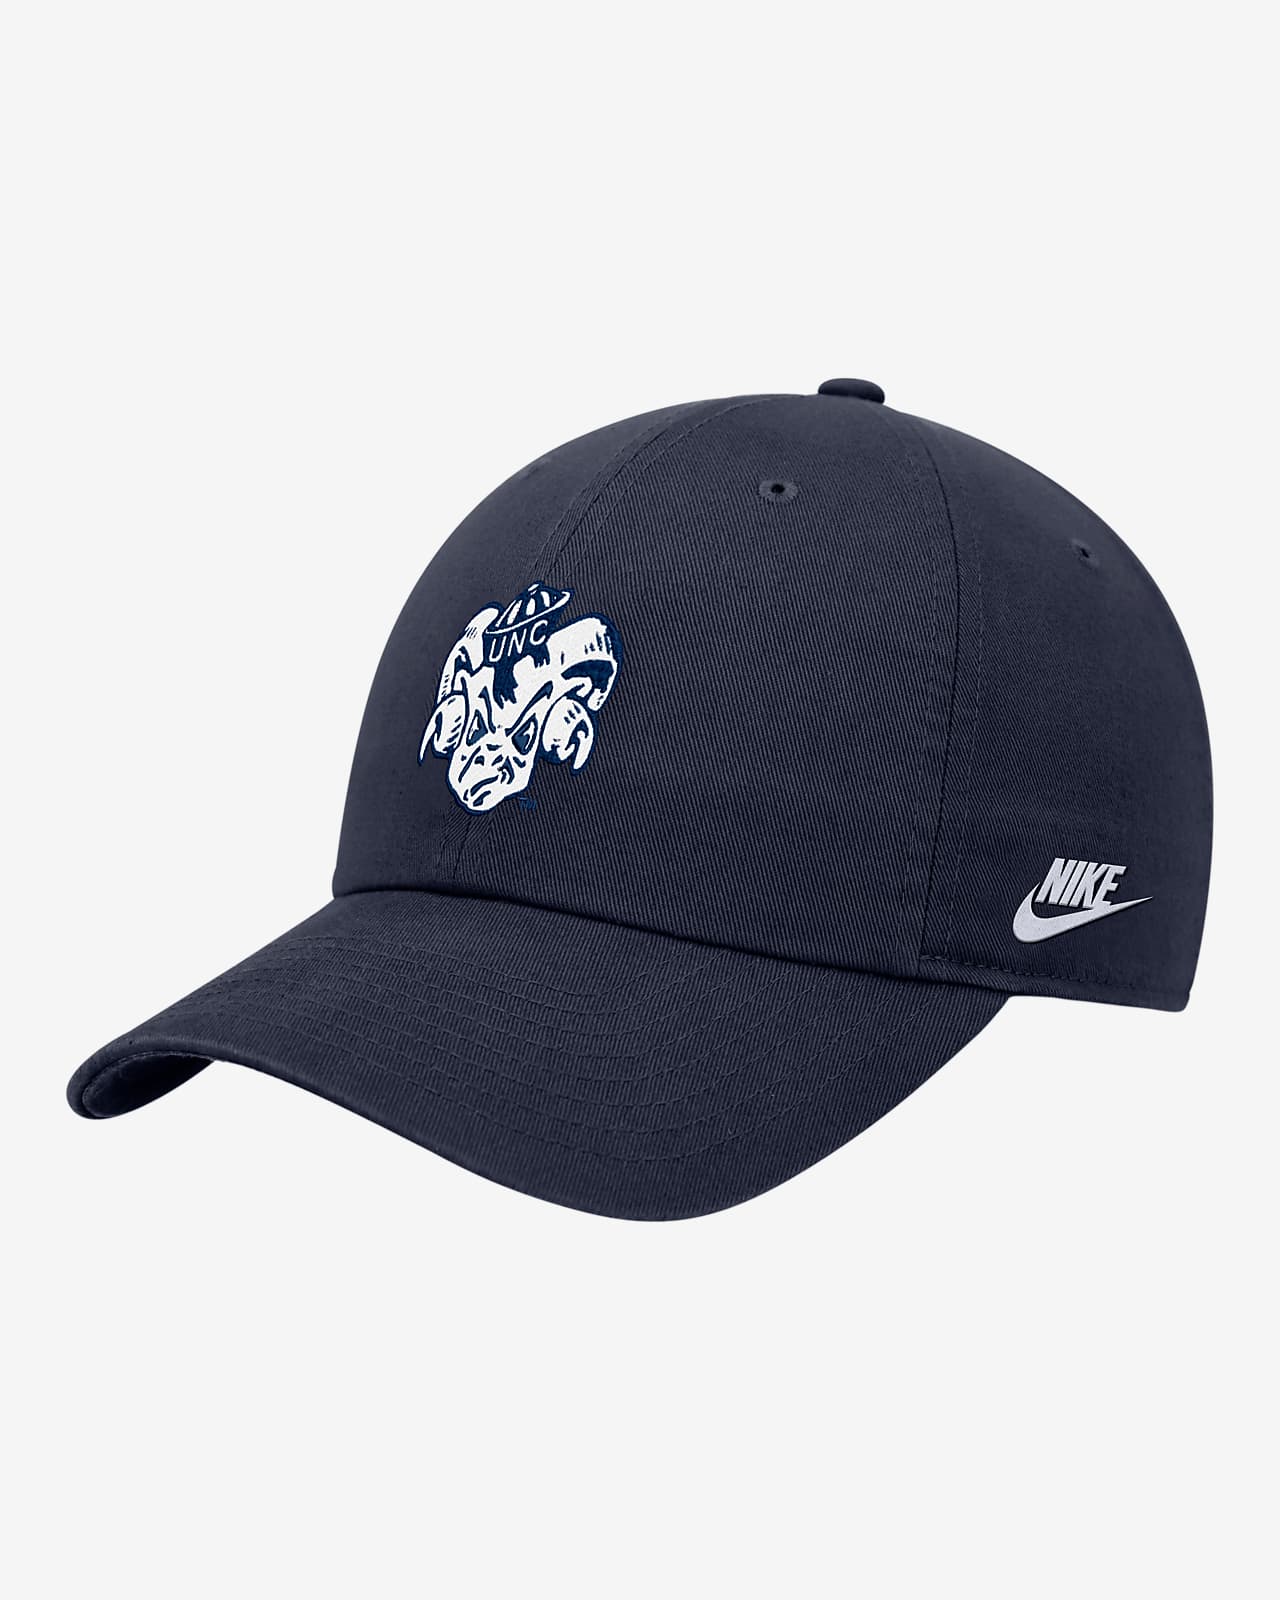 UNC Nike College Cap